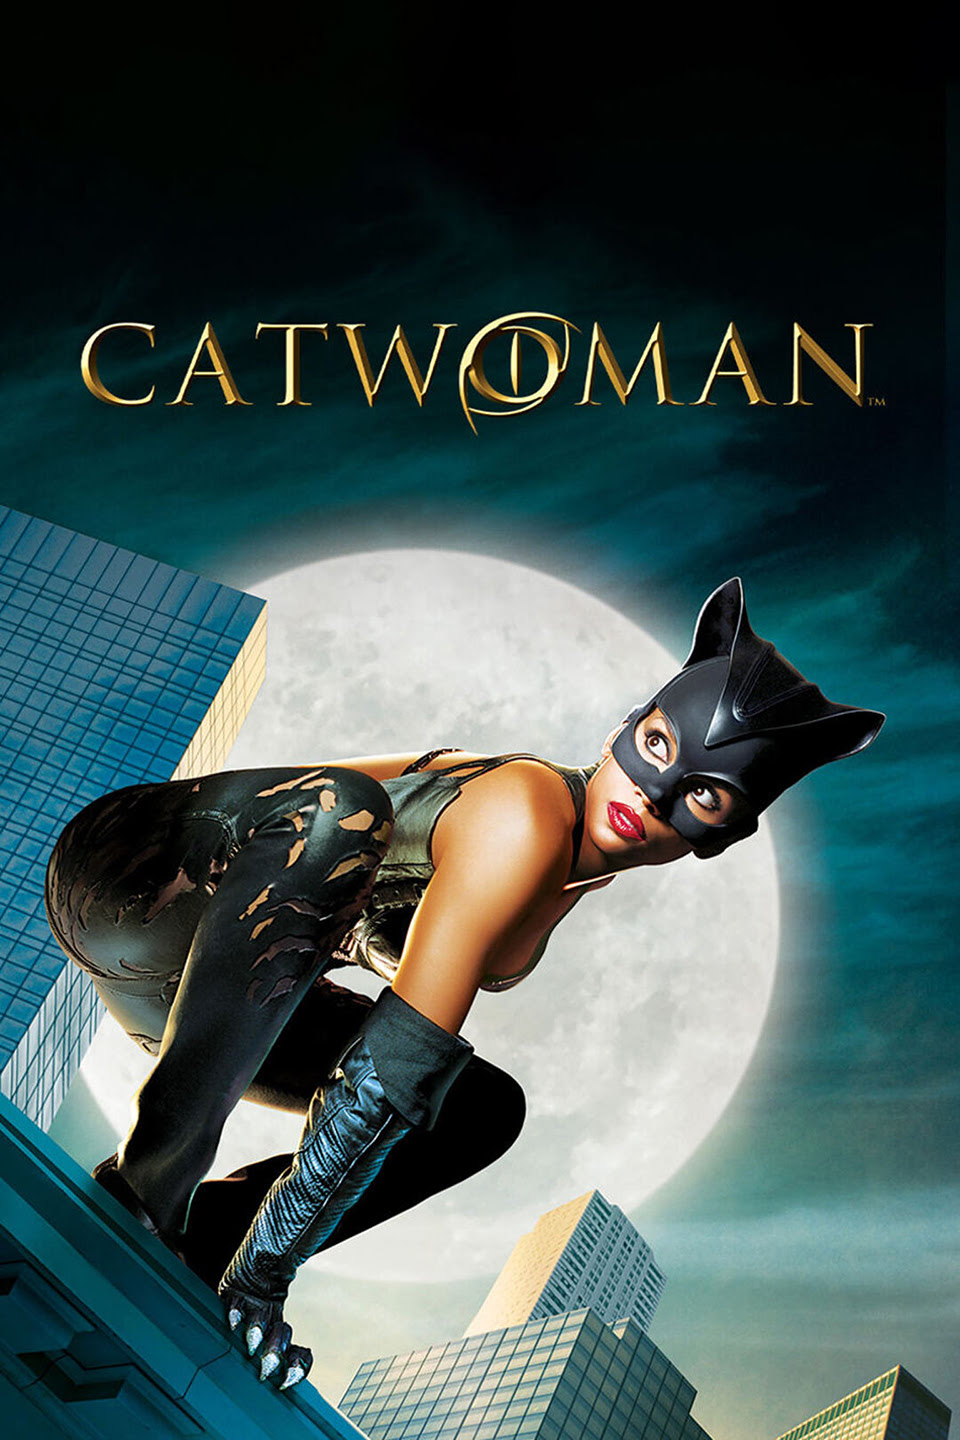 Catwoman (2004) Hindi & English